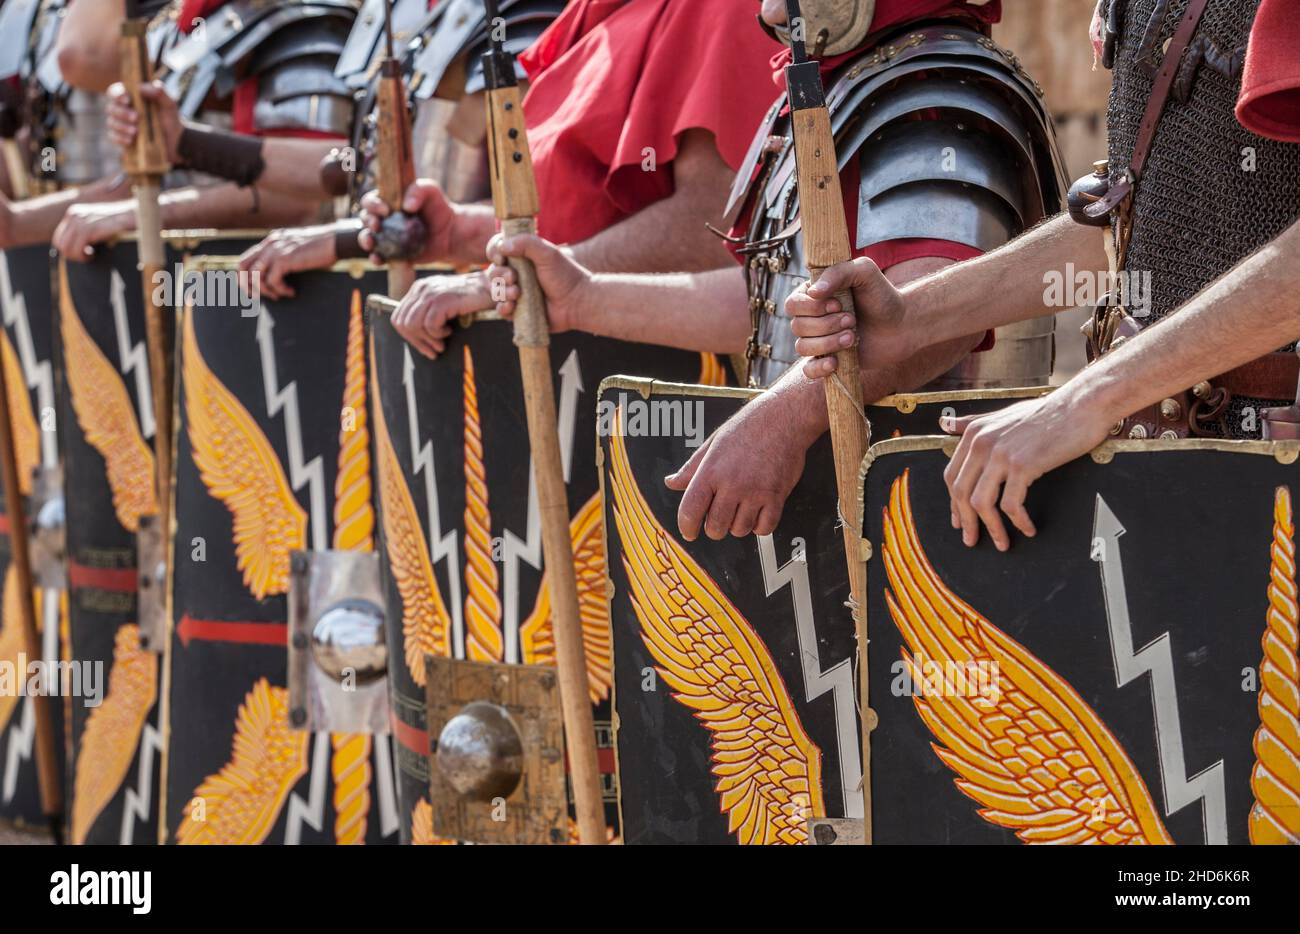 Legionarios romanos en formación. Manos sosteniendo pilas o javelinas. Débiles motivos de alas de águila y relámpagos en la scuta. Foto de stock